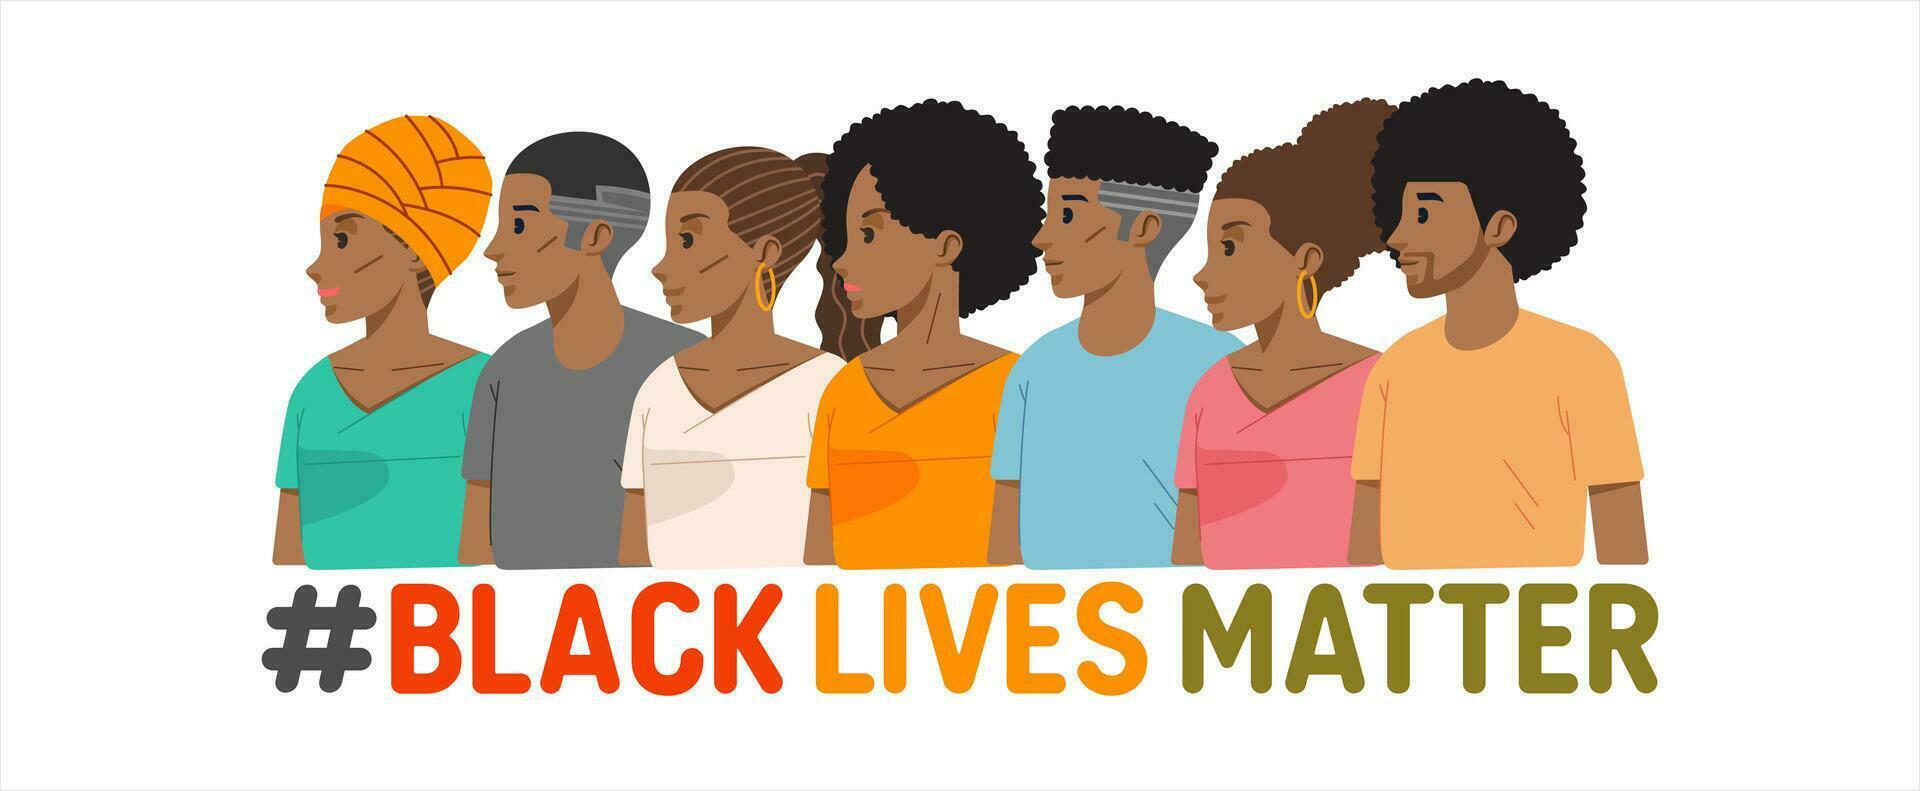 svart liv materia. afrikansk amerikan män och kvinna stå ett förbi ett. tolerans och Nej rasism begrepp. protest baner handla om mänsklig rätt av svart människor vektor